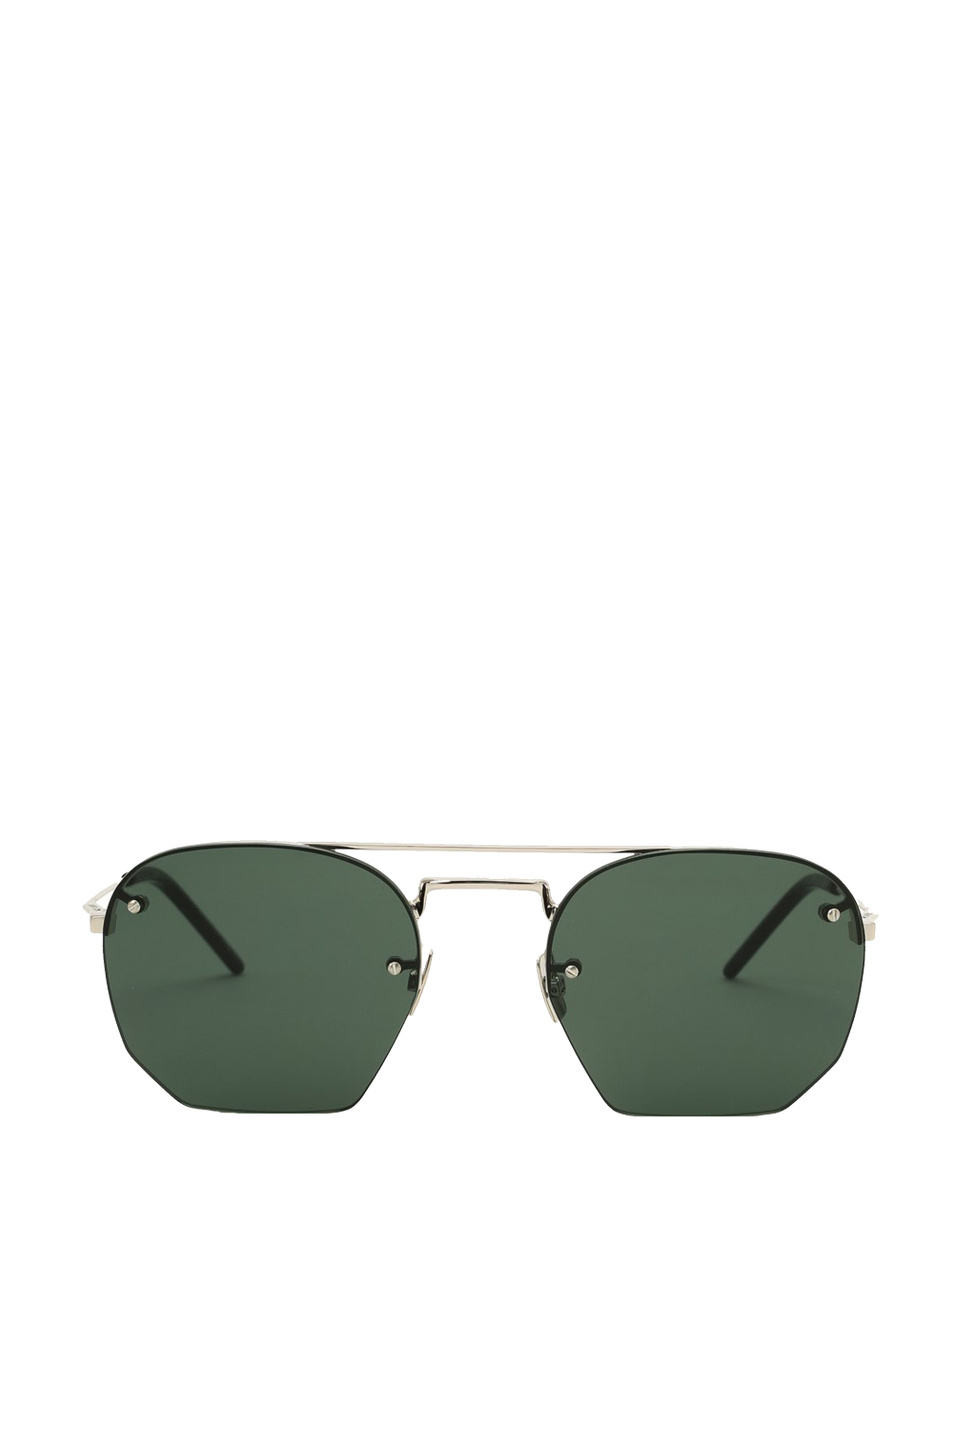 Saint Laurent Солнцезащитные очки SL 422 (цвет ), артикул SL 422 | Фото 1